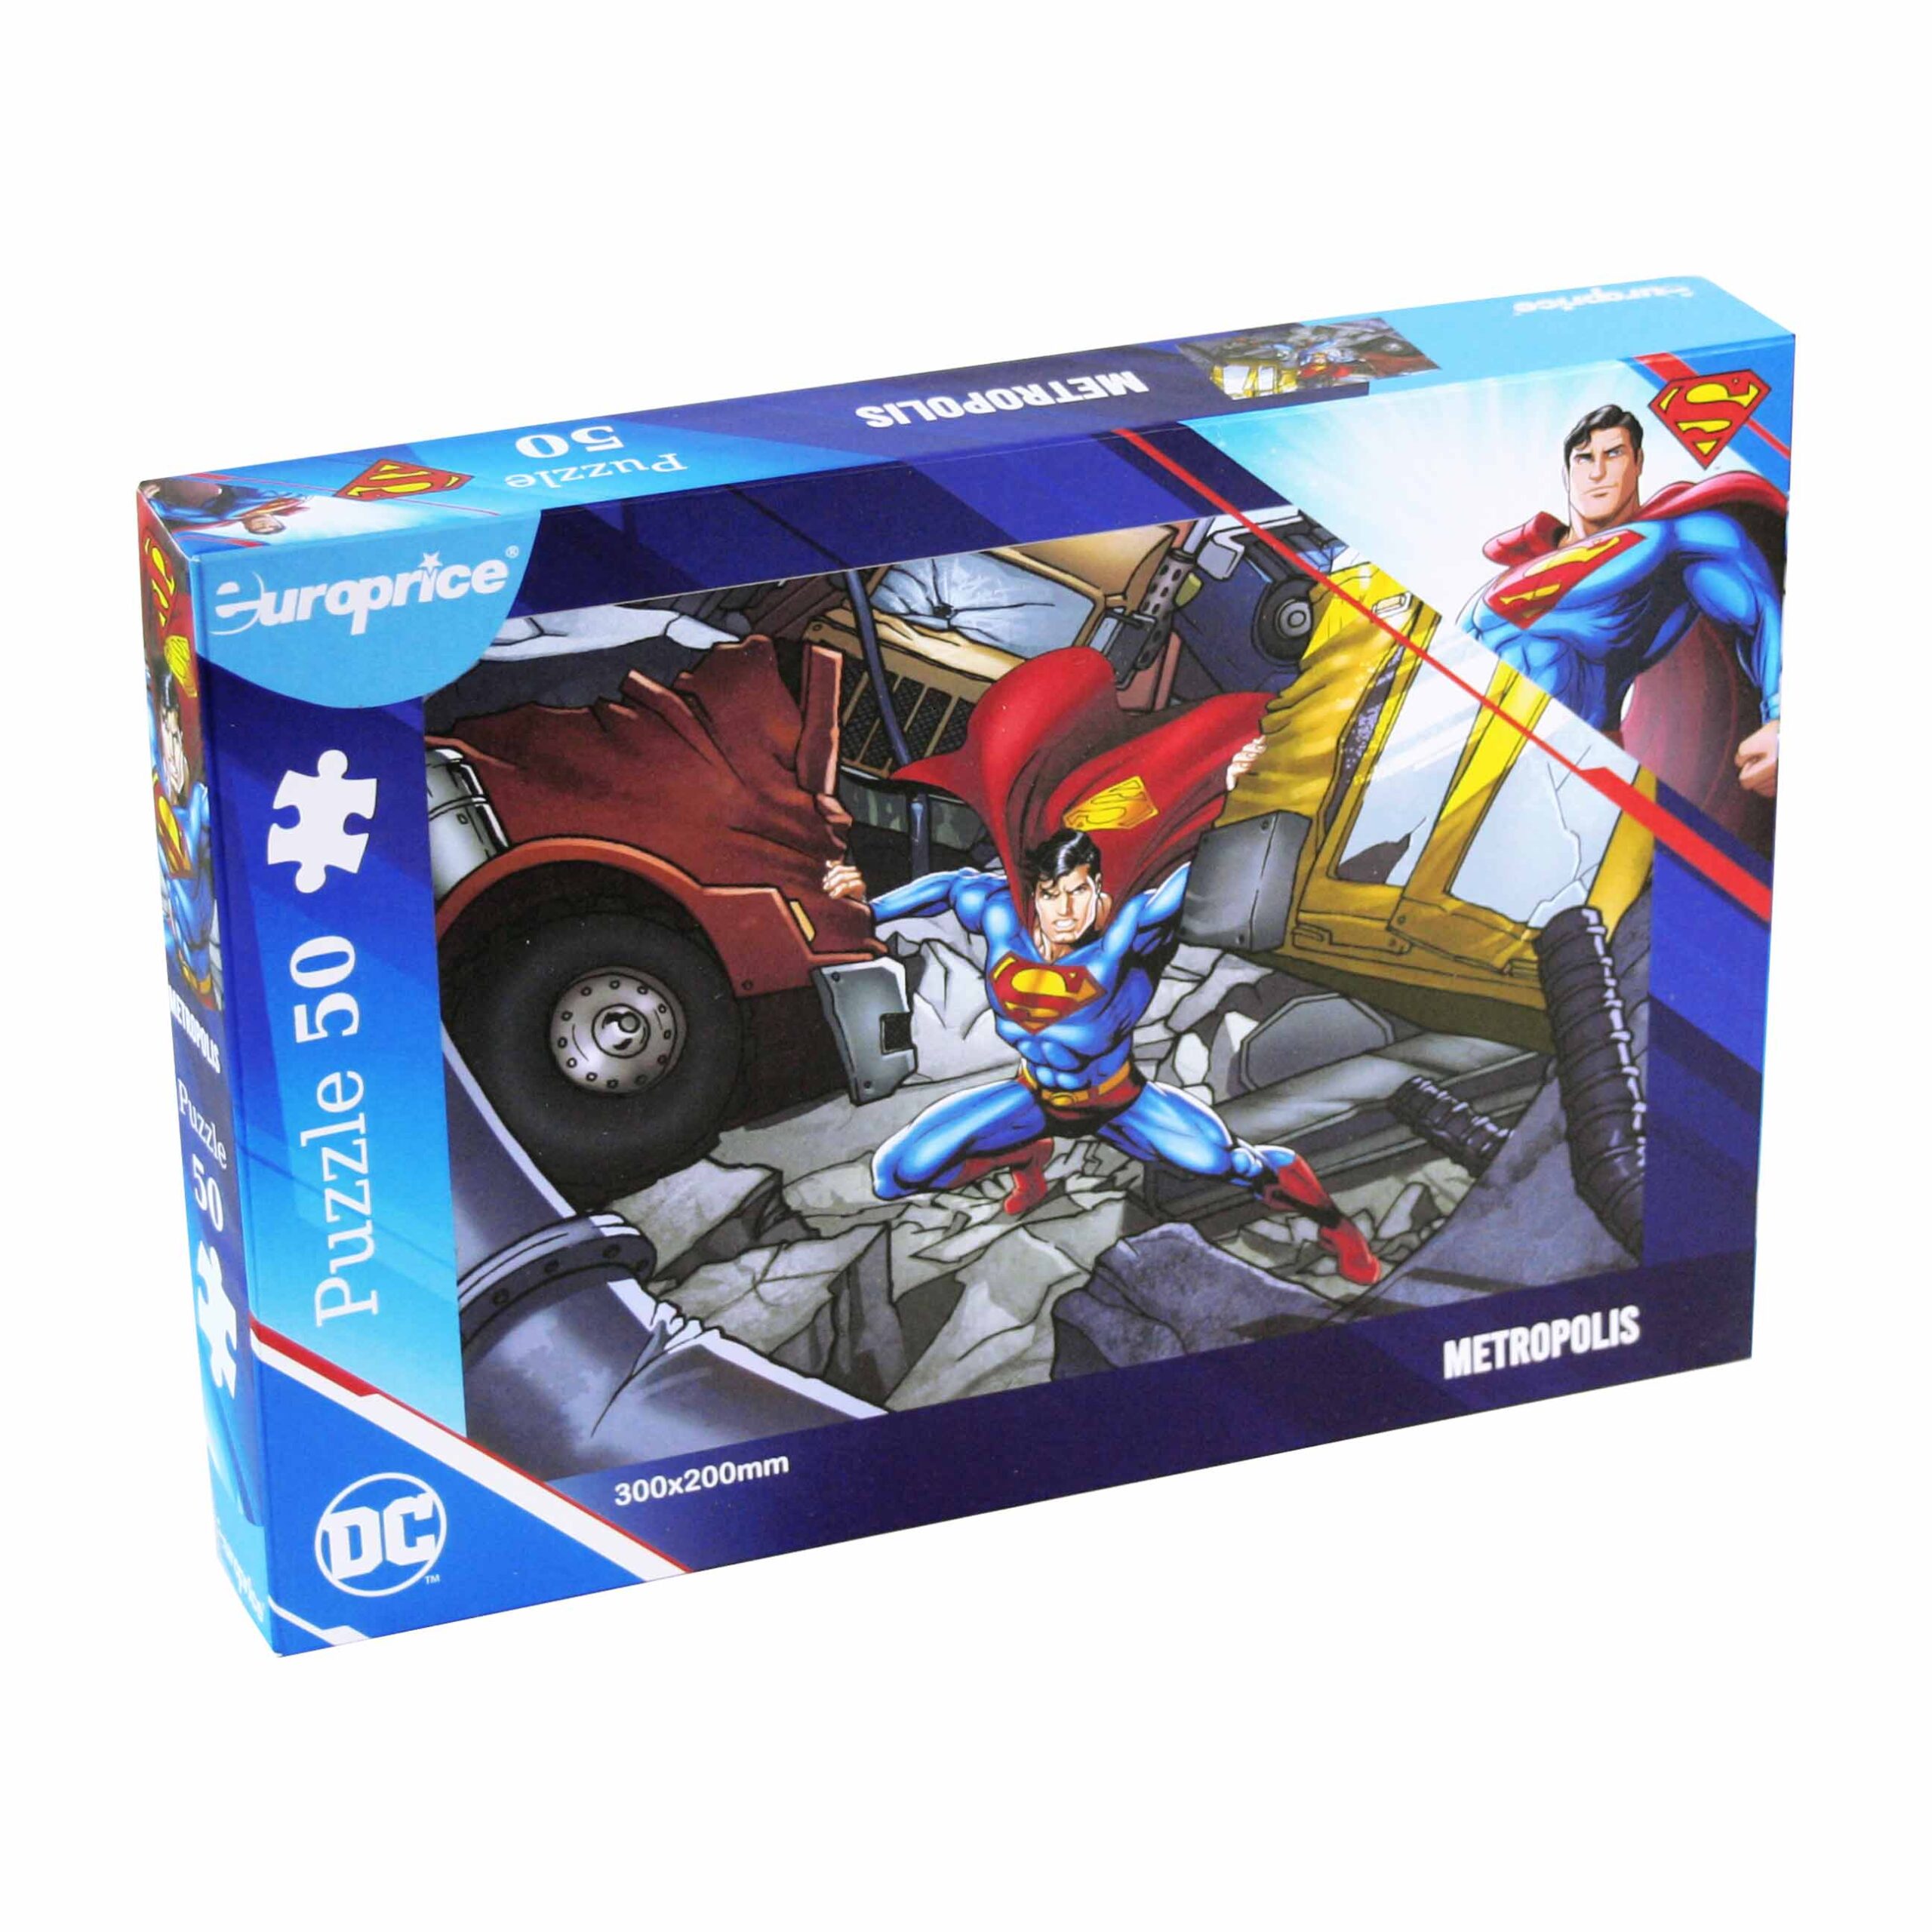 Caixa do puzzle Superman Metropolis de 50 peças. Apresenta o Superman a segurar 2 carros num cenário de destruição.